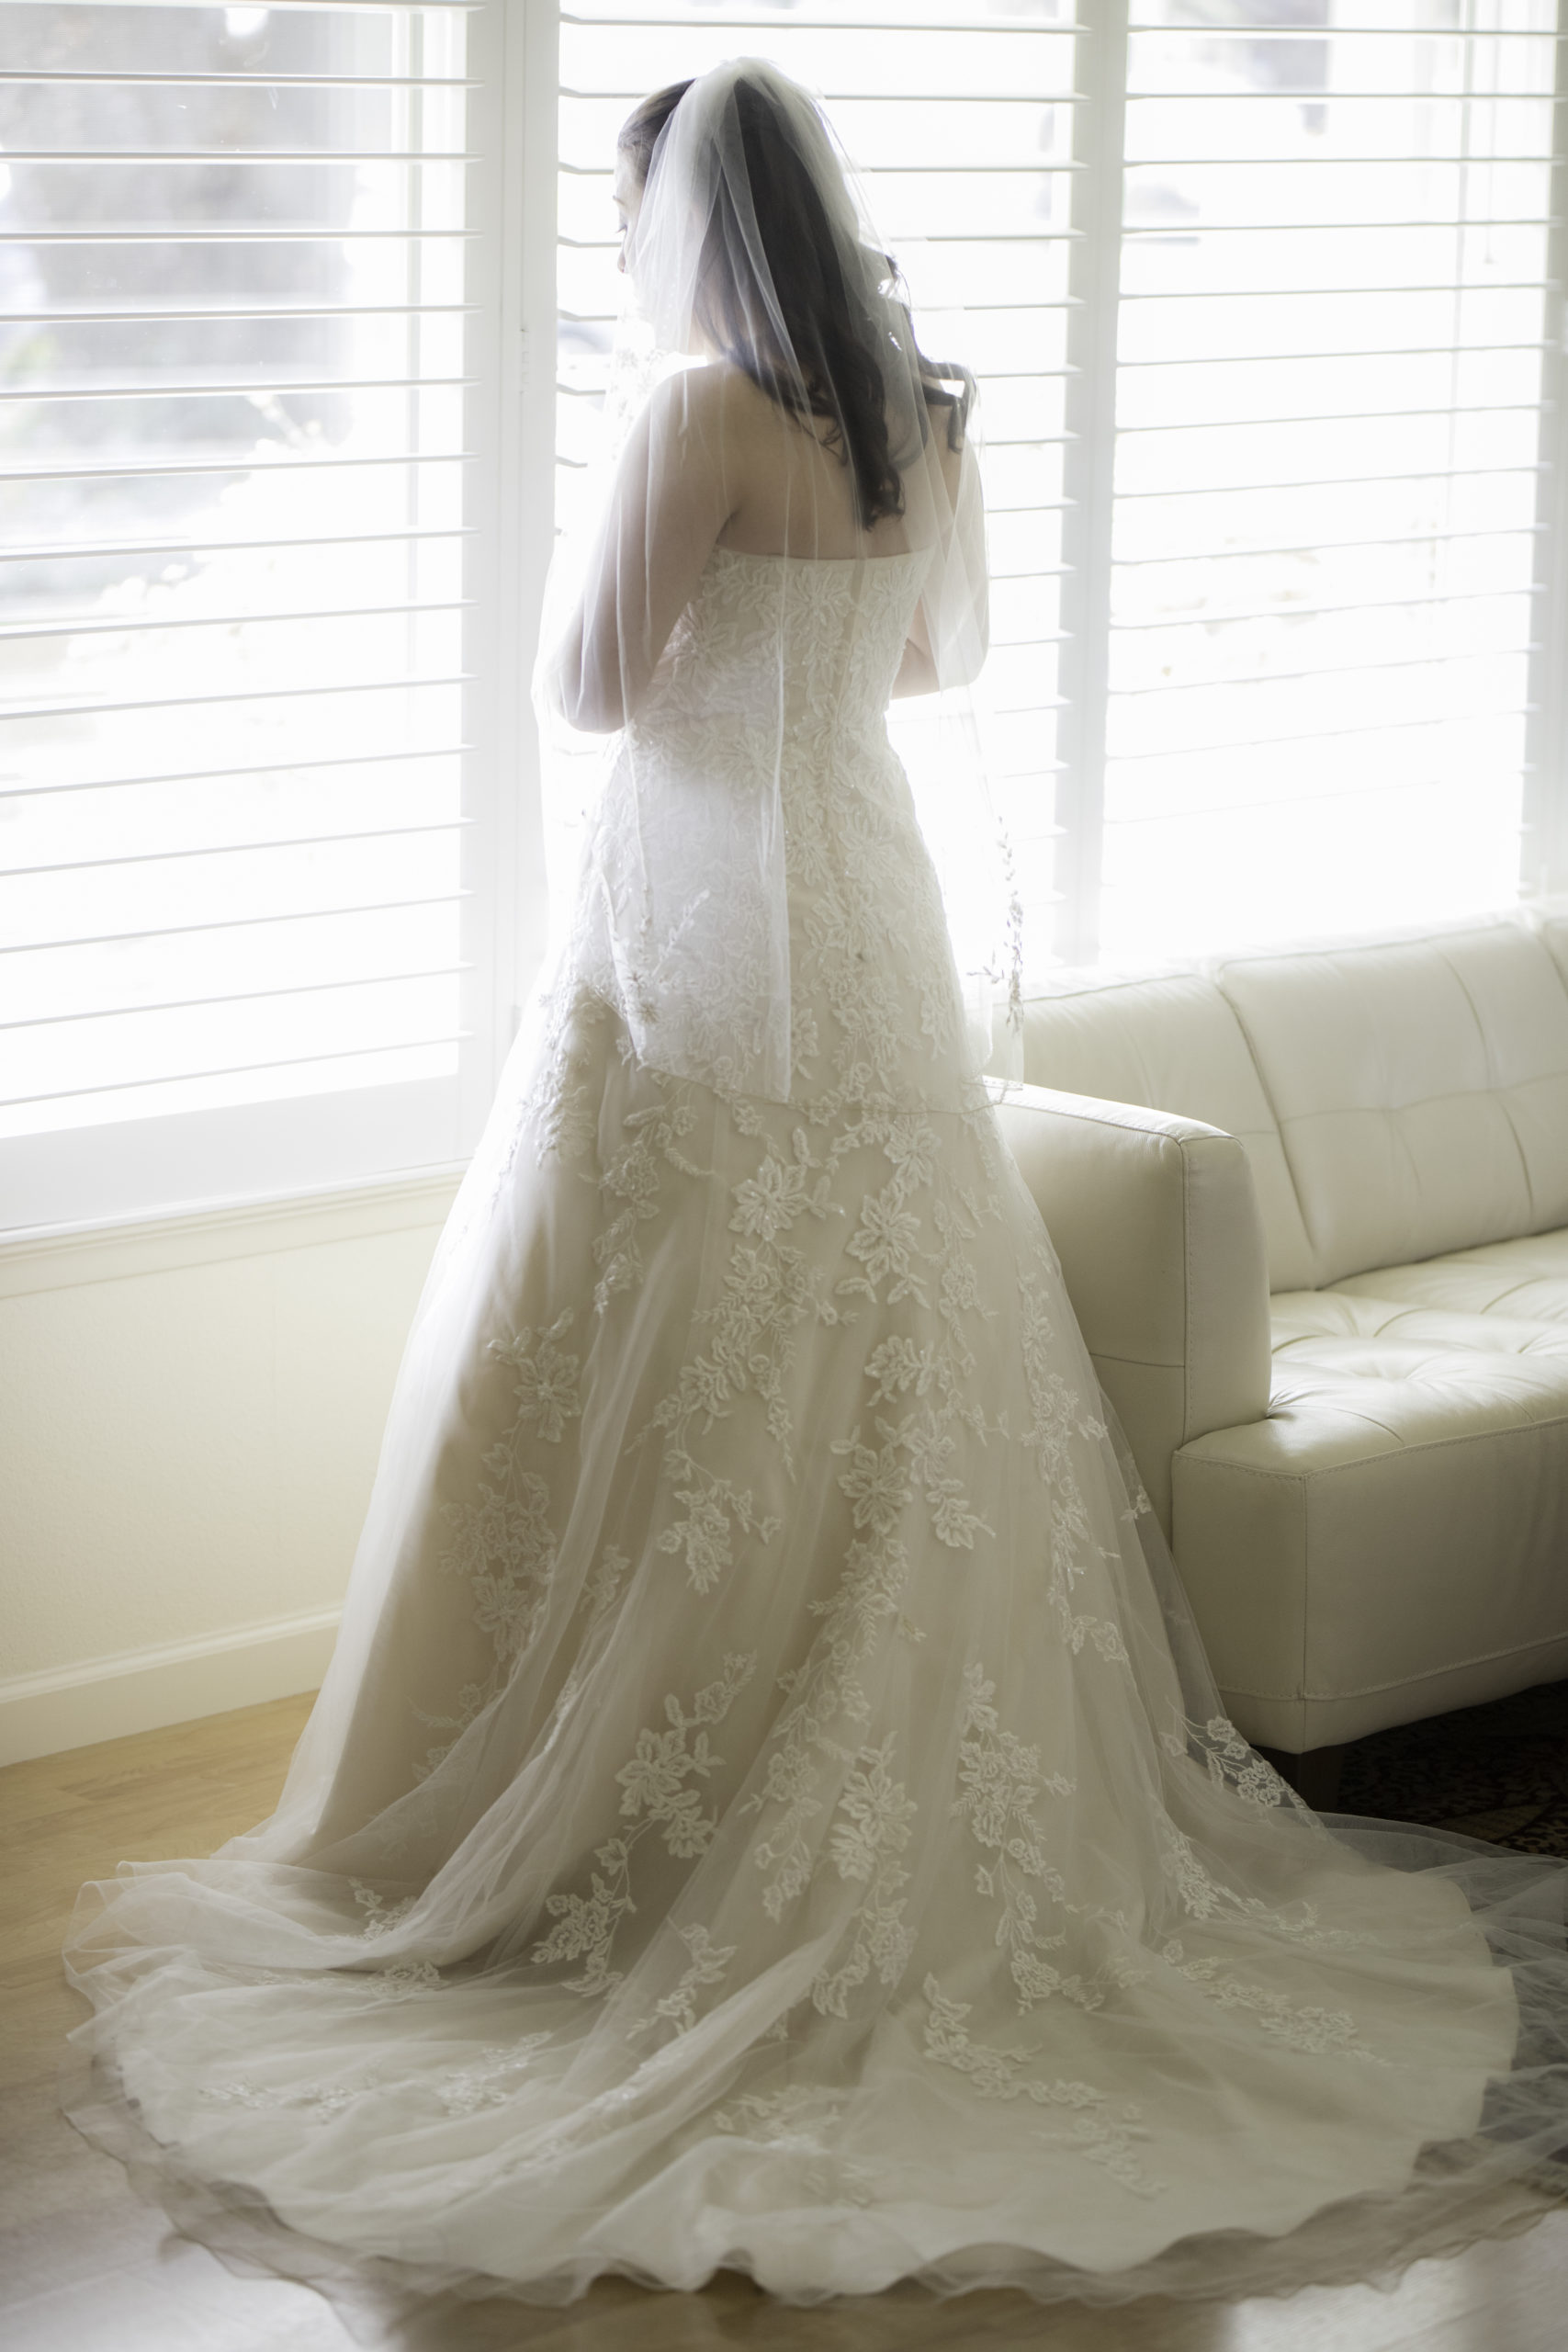 bride by window